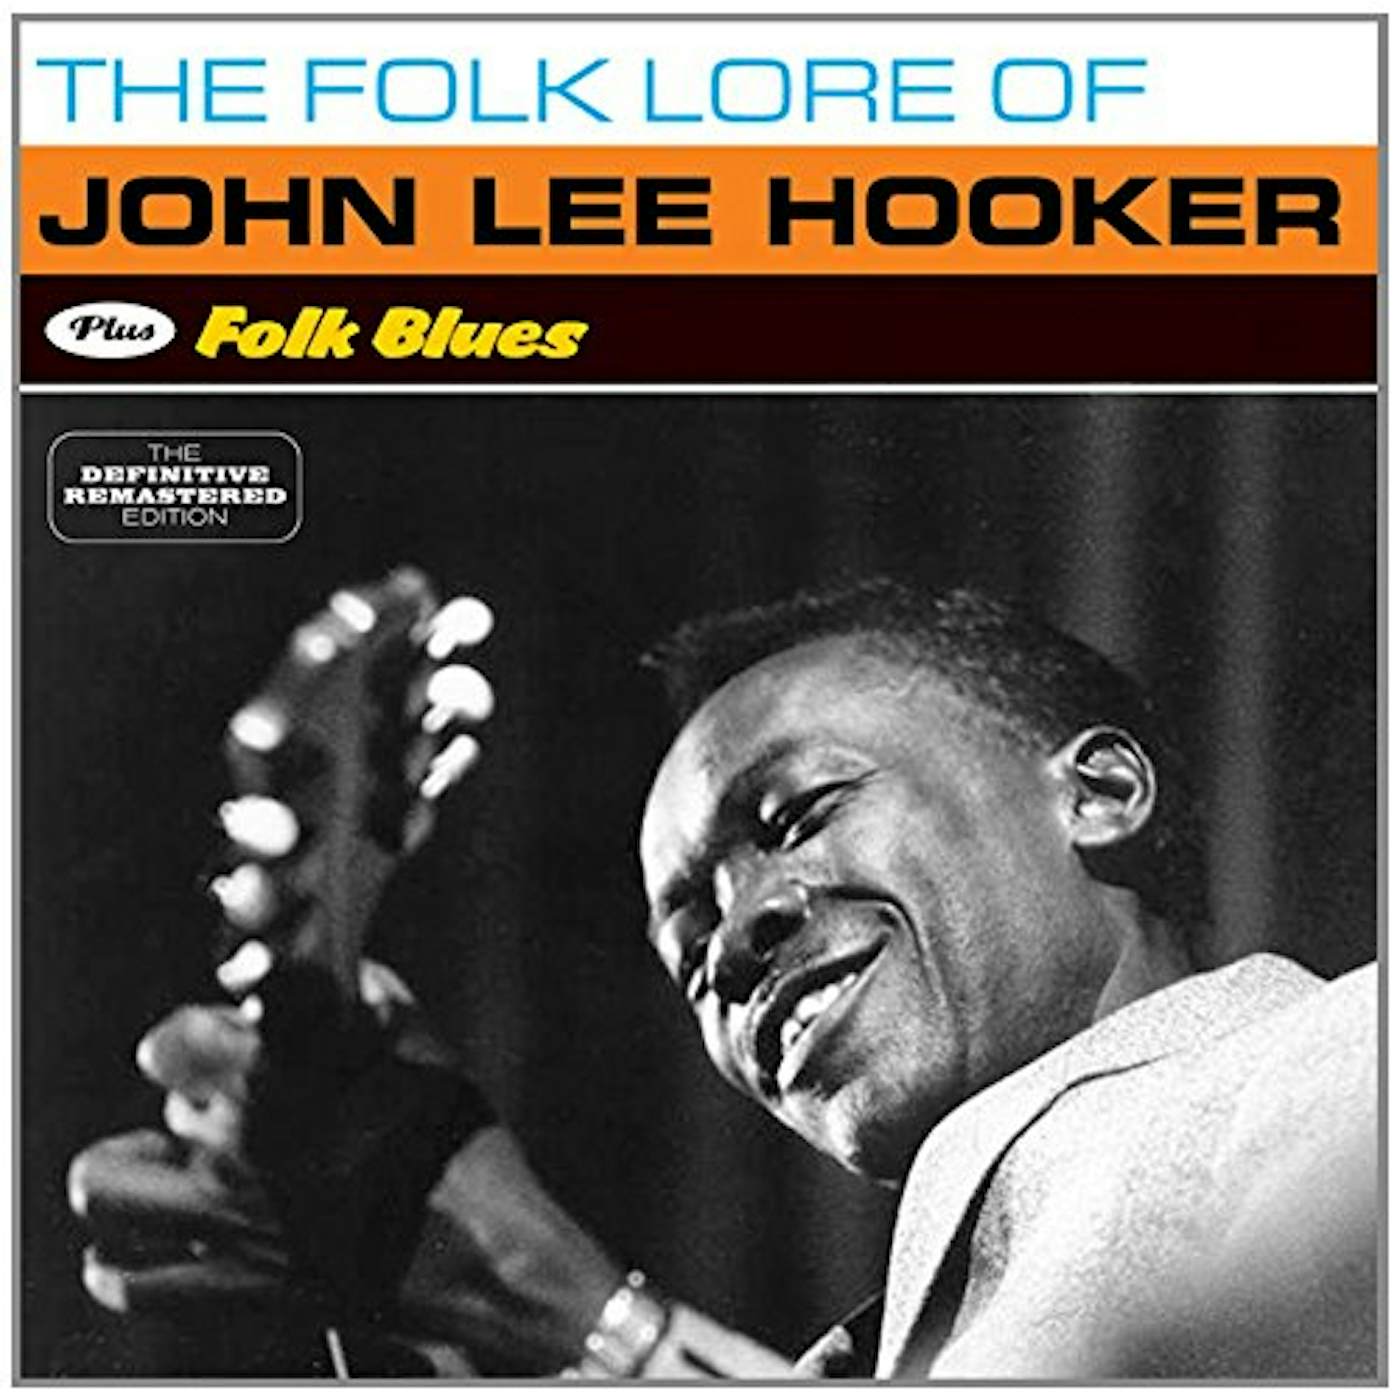 John Lee Hooker FOLK LORE OF + FOLK BLUES CD